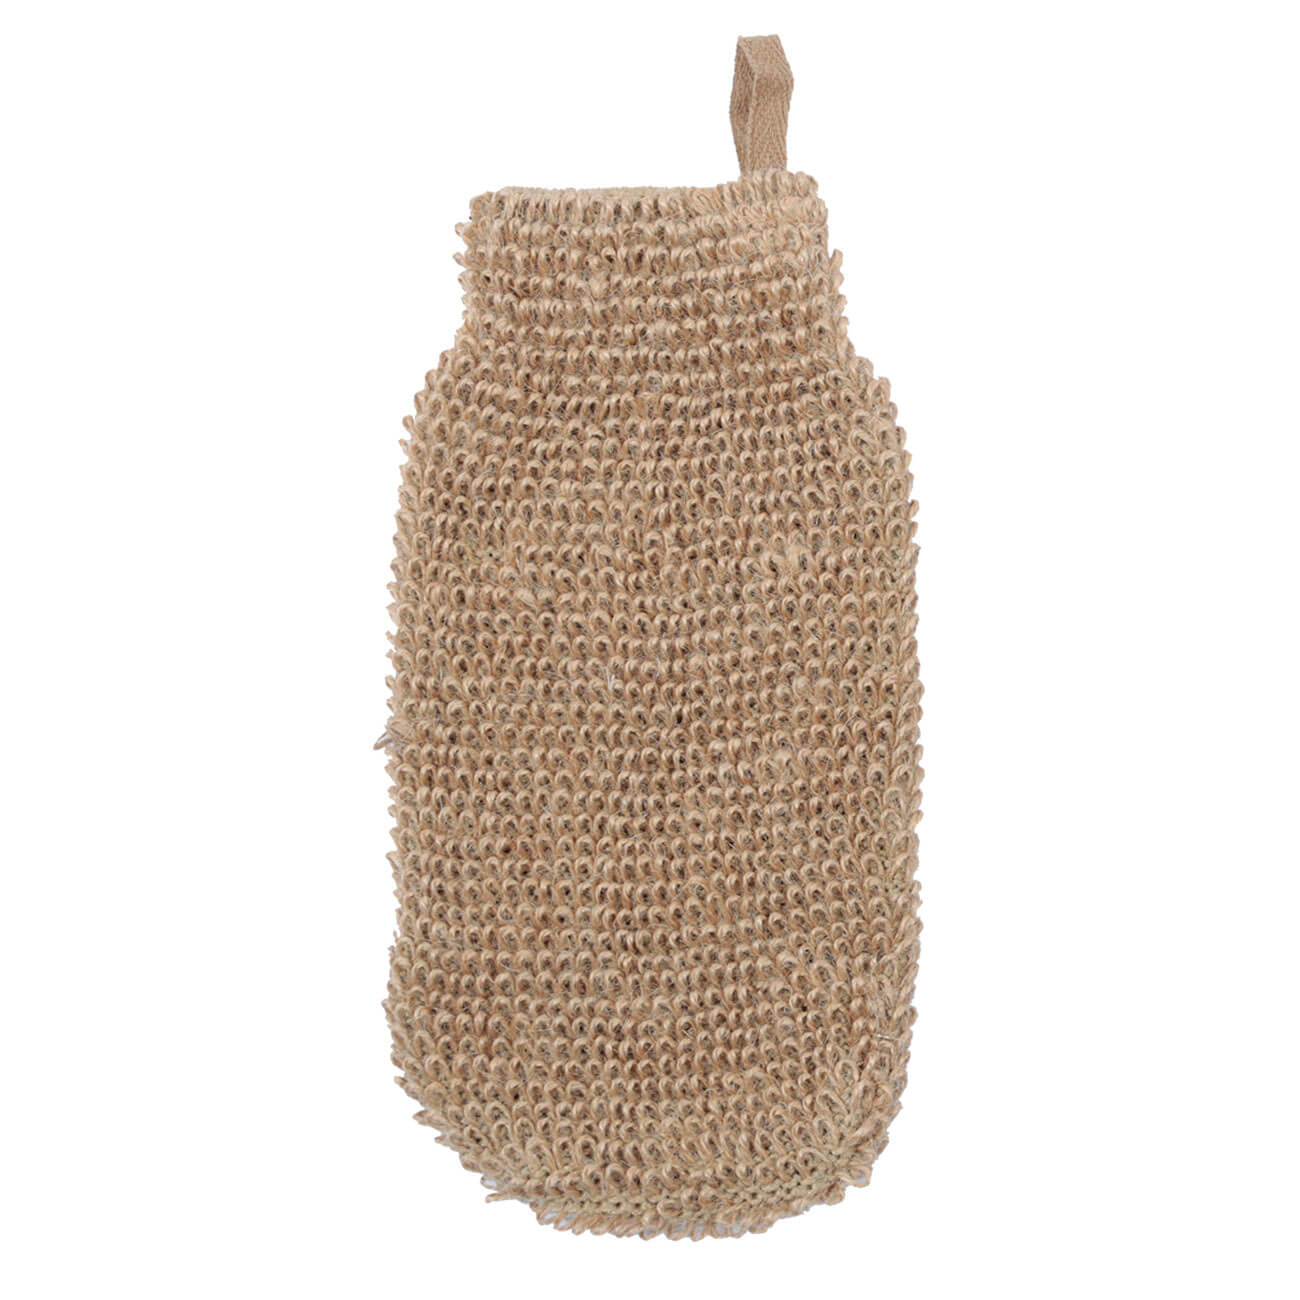 Мочалка-варежка для мытья тела, 10,5х21,5 см, конопляное волокно, бежевая, Eco life открывалка для банок 18 см сталь растительное волокно бежевая deft